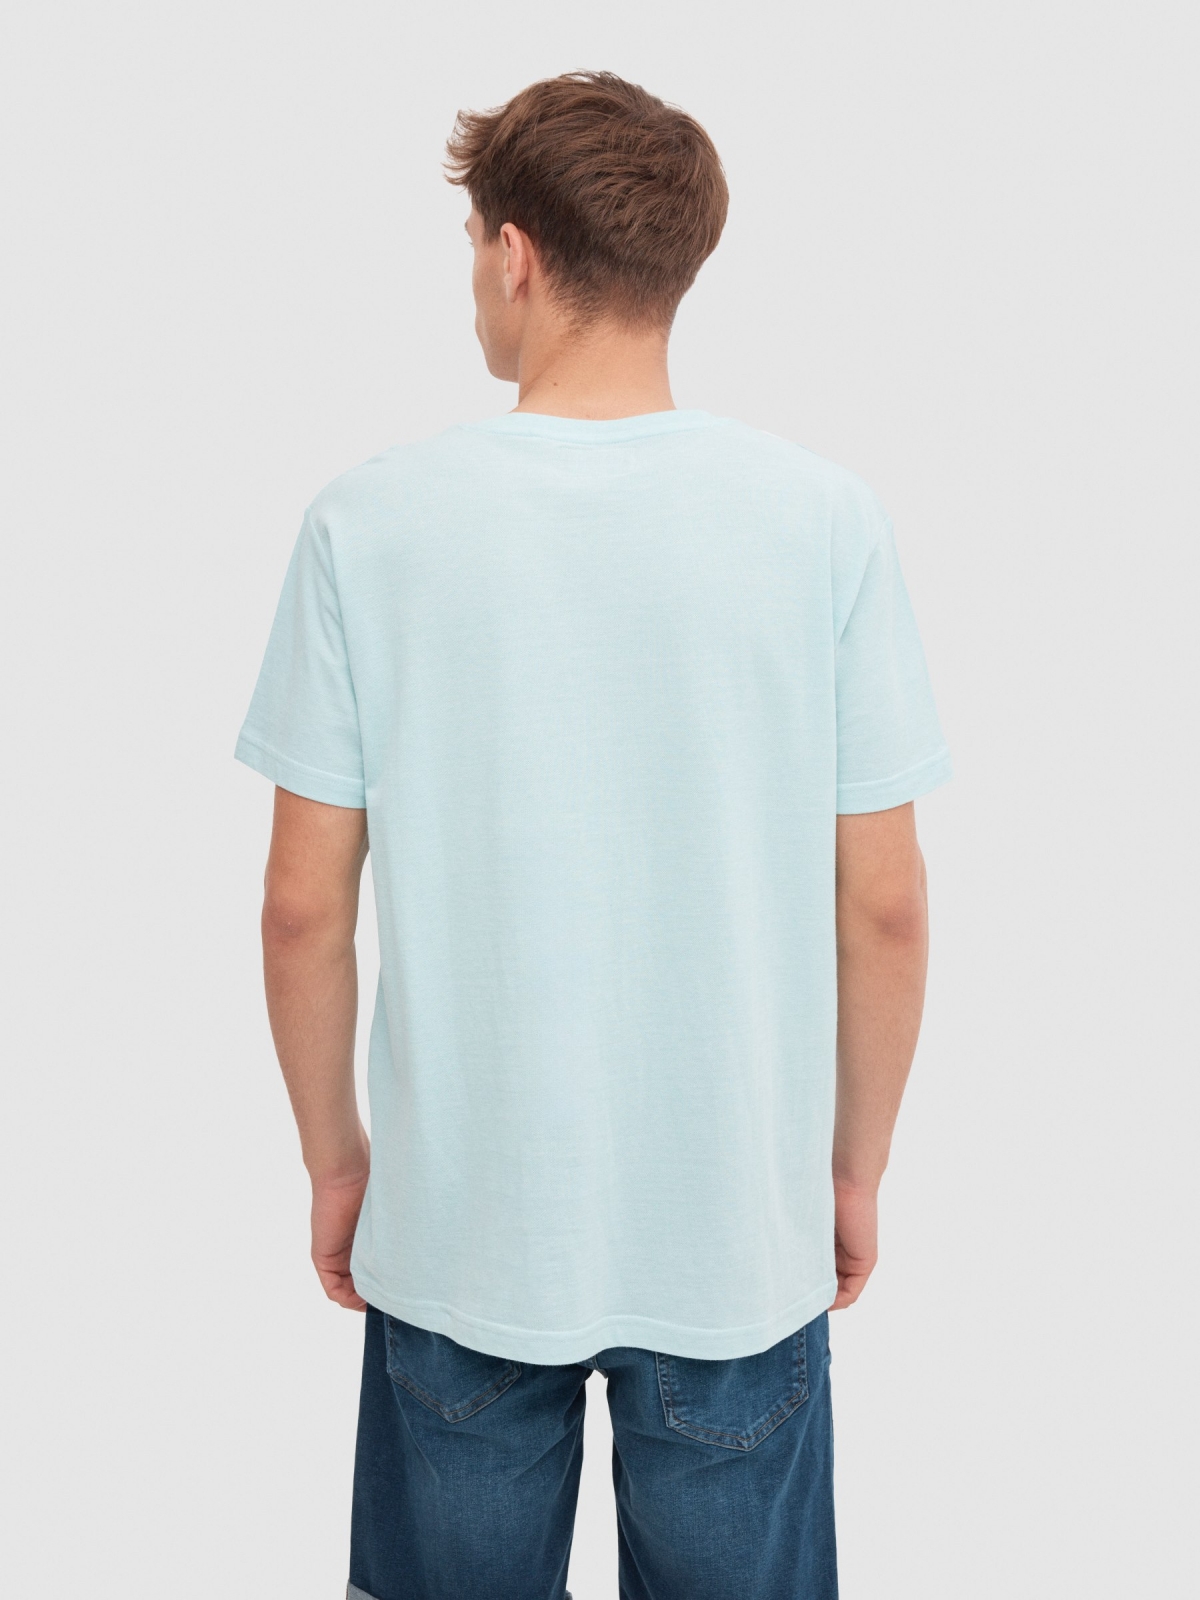 Colour Block T-shirt light blue middle back view